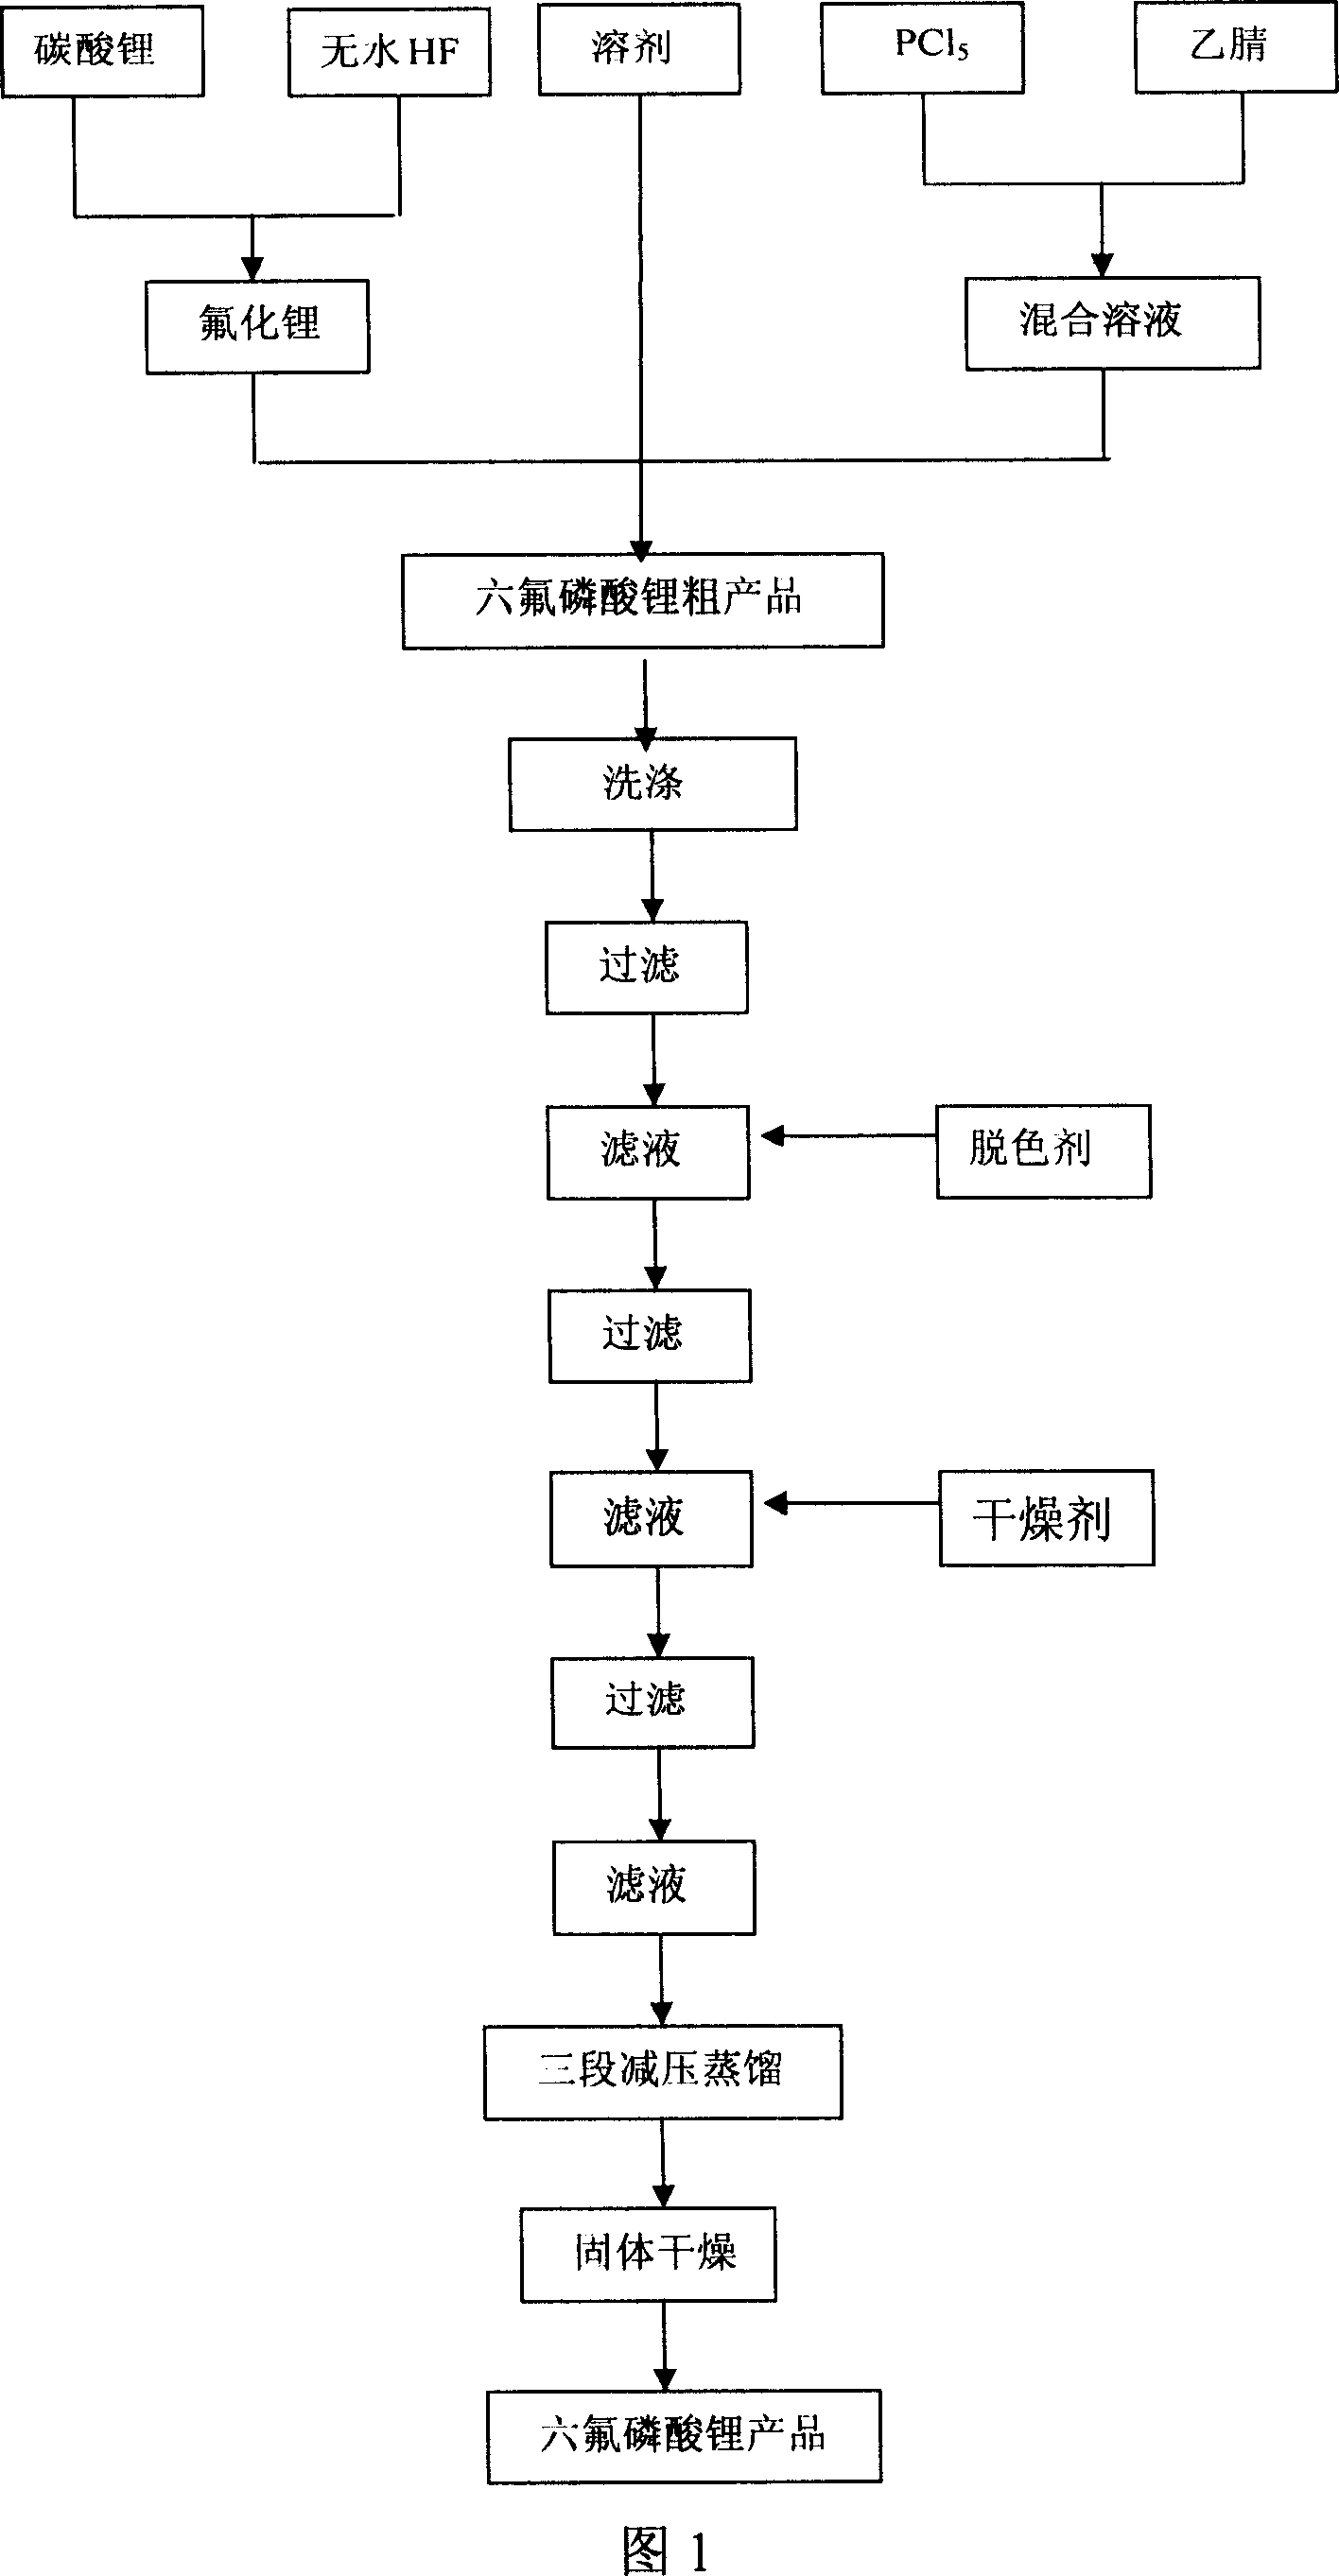 Method for preparing lithium hexafluorophosphate